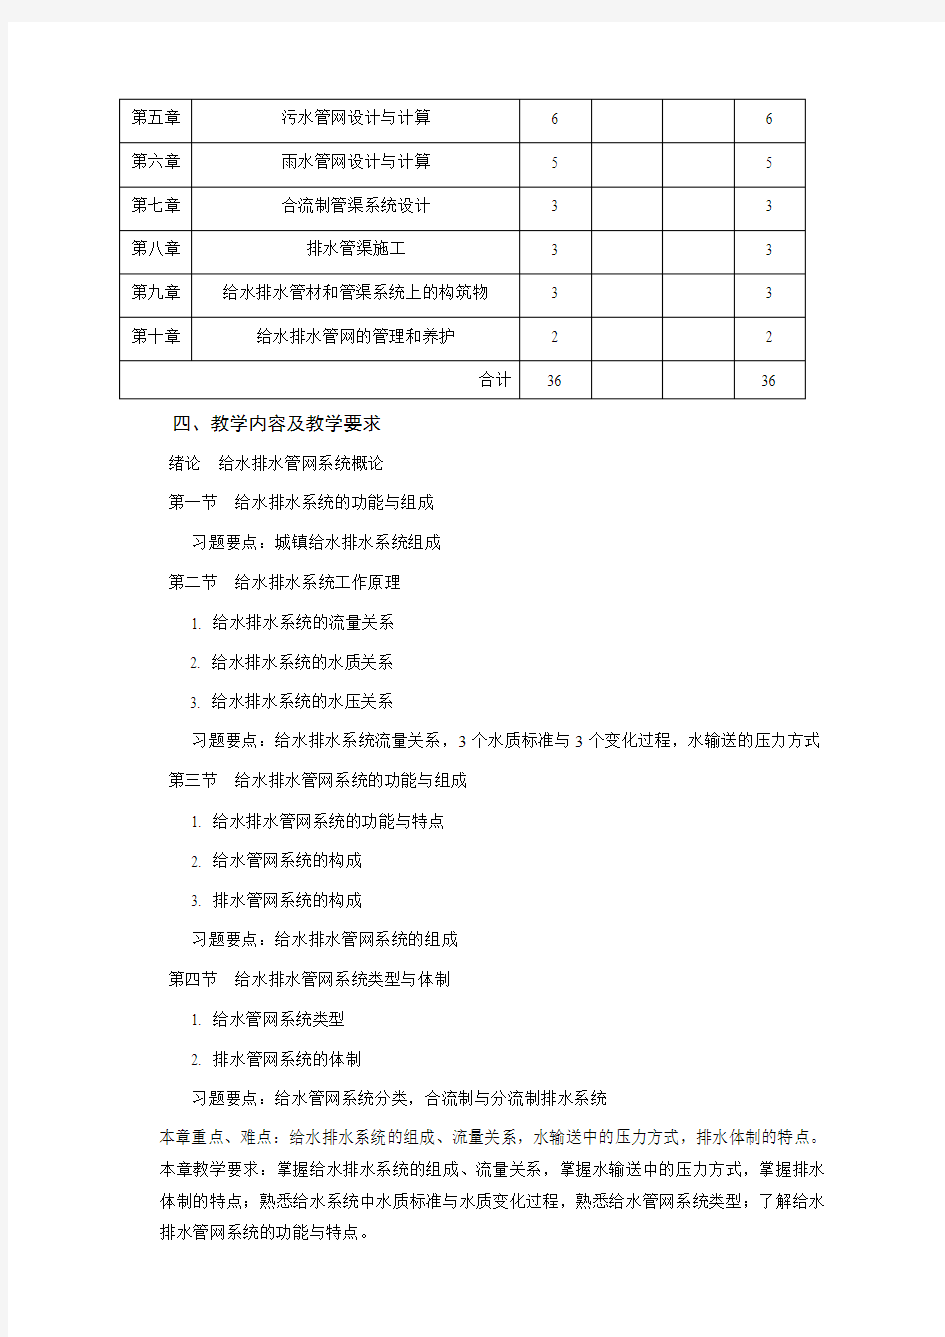 南京农业大学课程教学大纲格式与要求-南京农业大学资源与环境科学